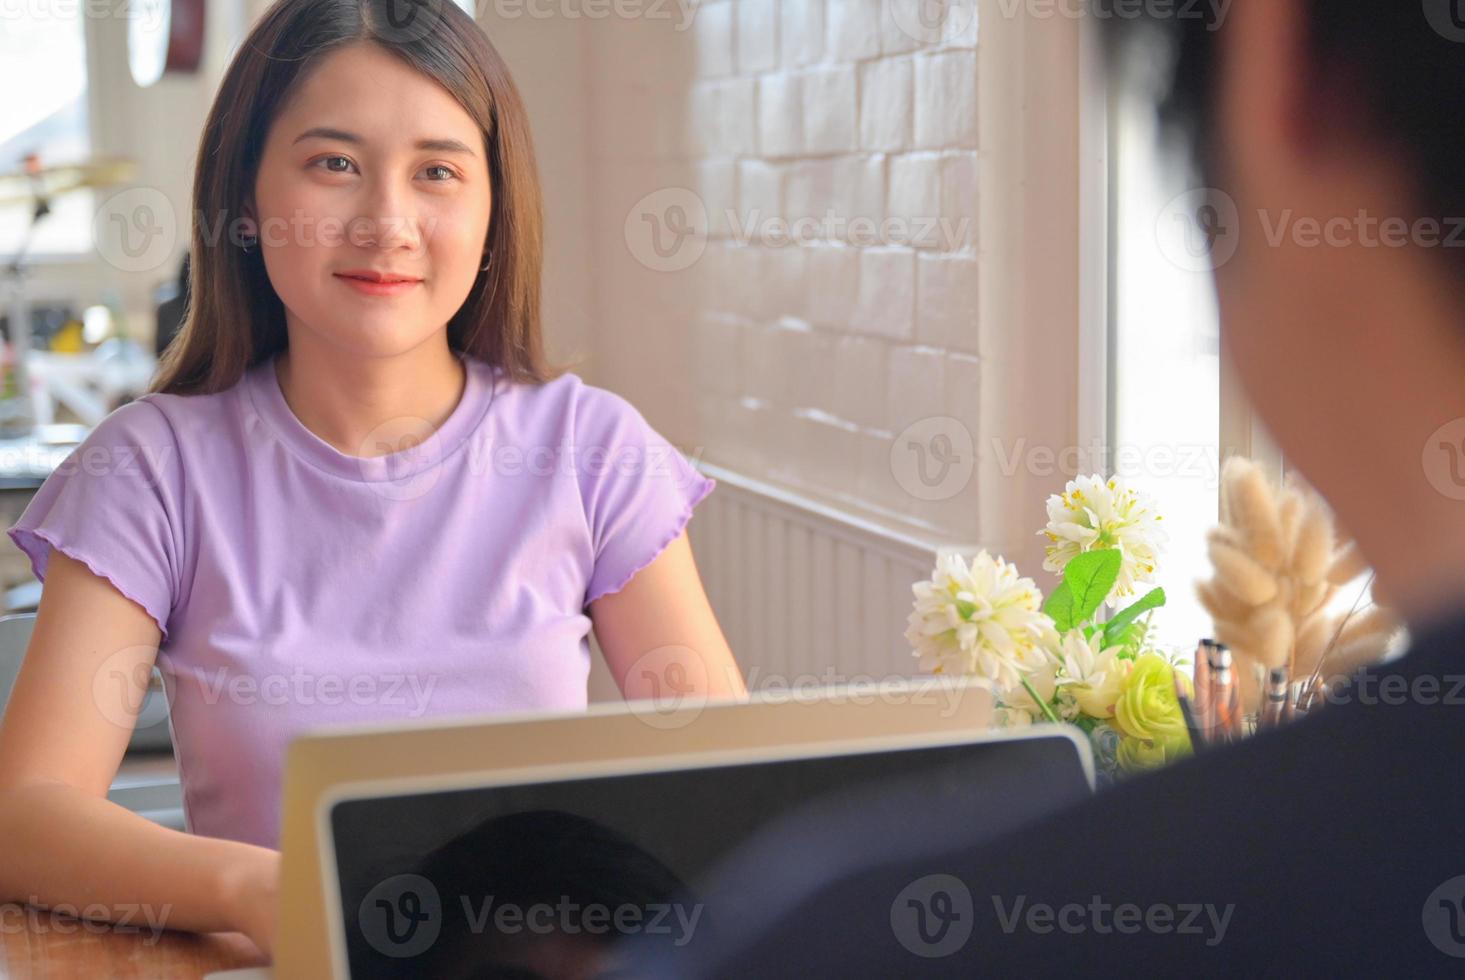 jonge vrouwelijke student keek naar een vriend die tegenover zat. ze leren thuis online met een laptop. foto